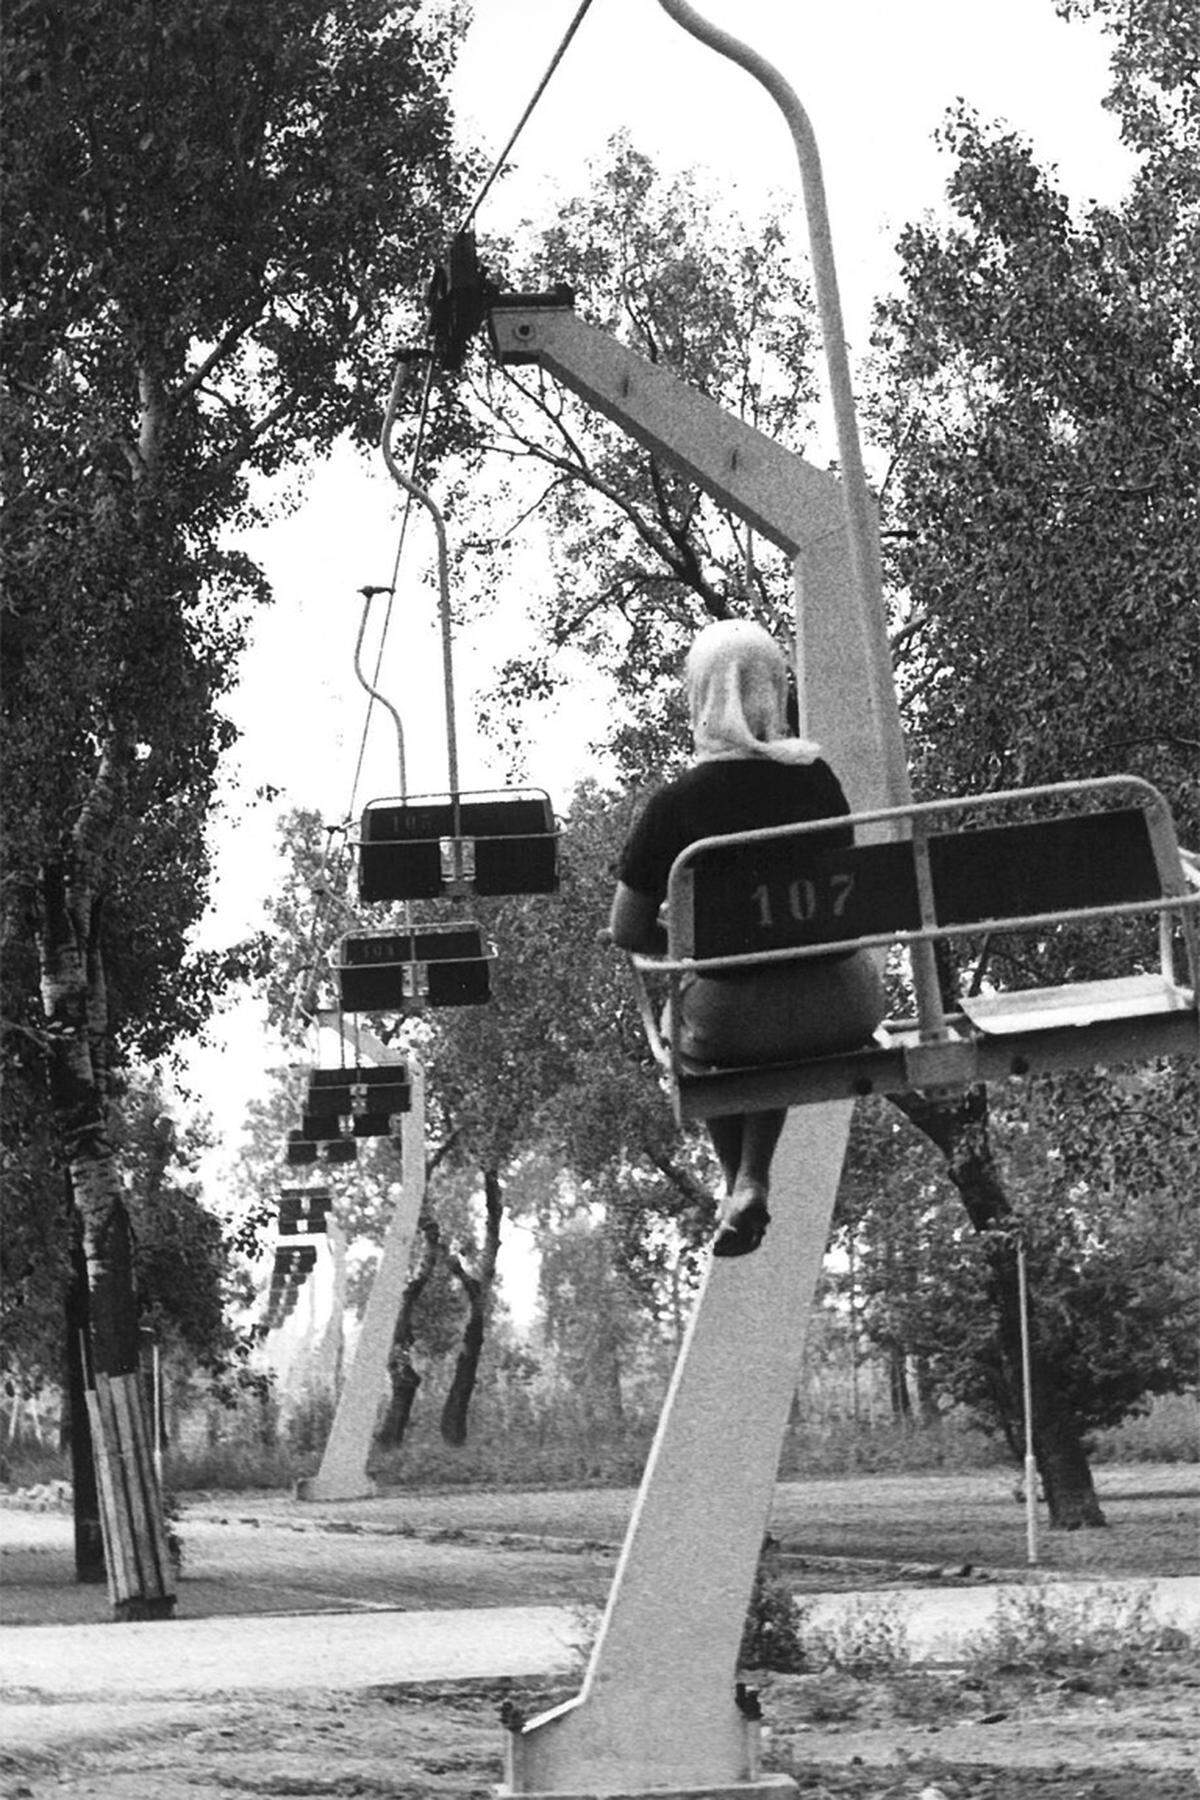 Im Donaupark wurde für die Internationale Gartenschau ein Sessellift installiert, der den Besuchern einen Blick aus der Vogelperspektive bieten sollte. Der Lift wurde erst 1983 wieder abgebaut, nachdem er über Jahre verfallen war. Immerhin etwas mehr als 600.000 Fahrgäste hatten ihn während der WIG64 benutzt.Im Bild: Eine erste Probefahrt im August 1963